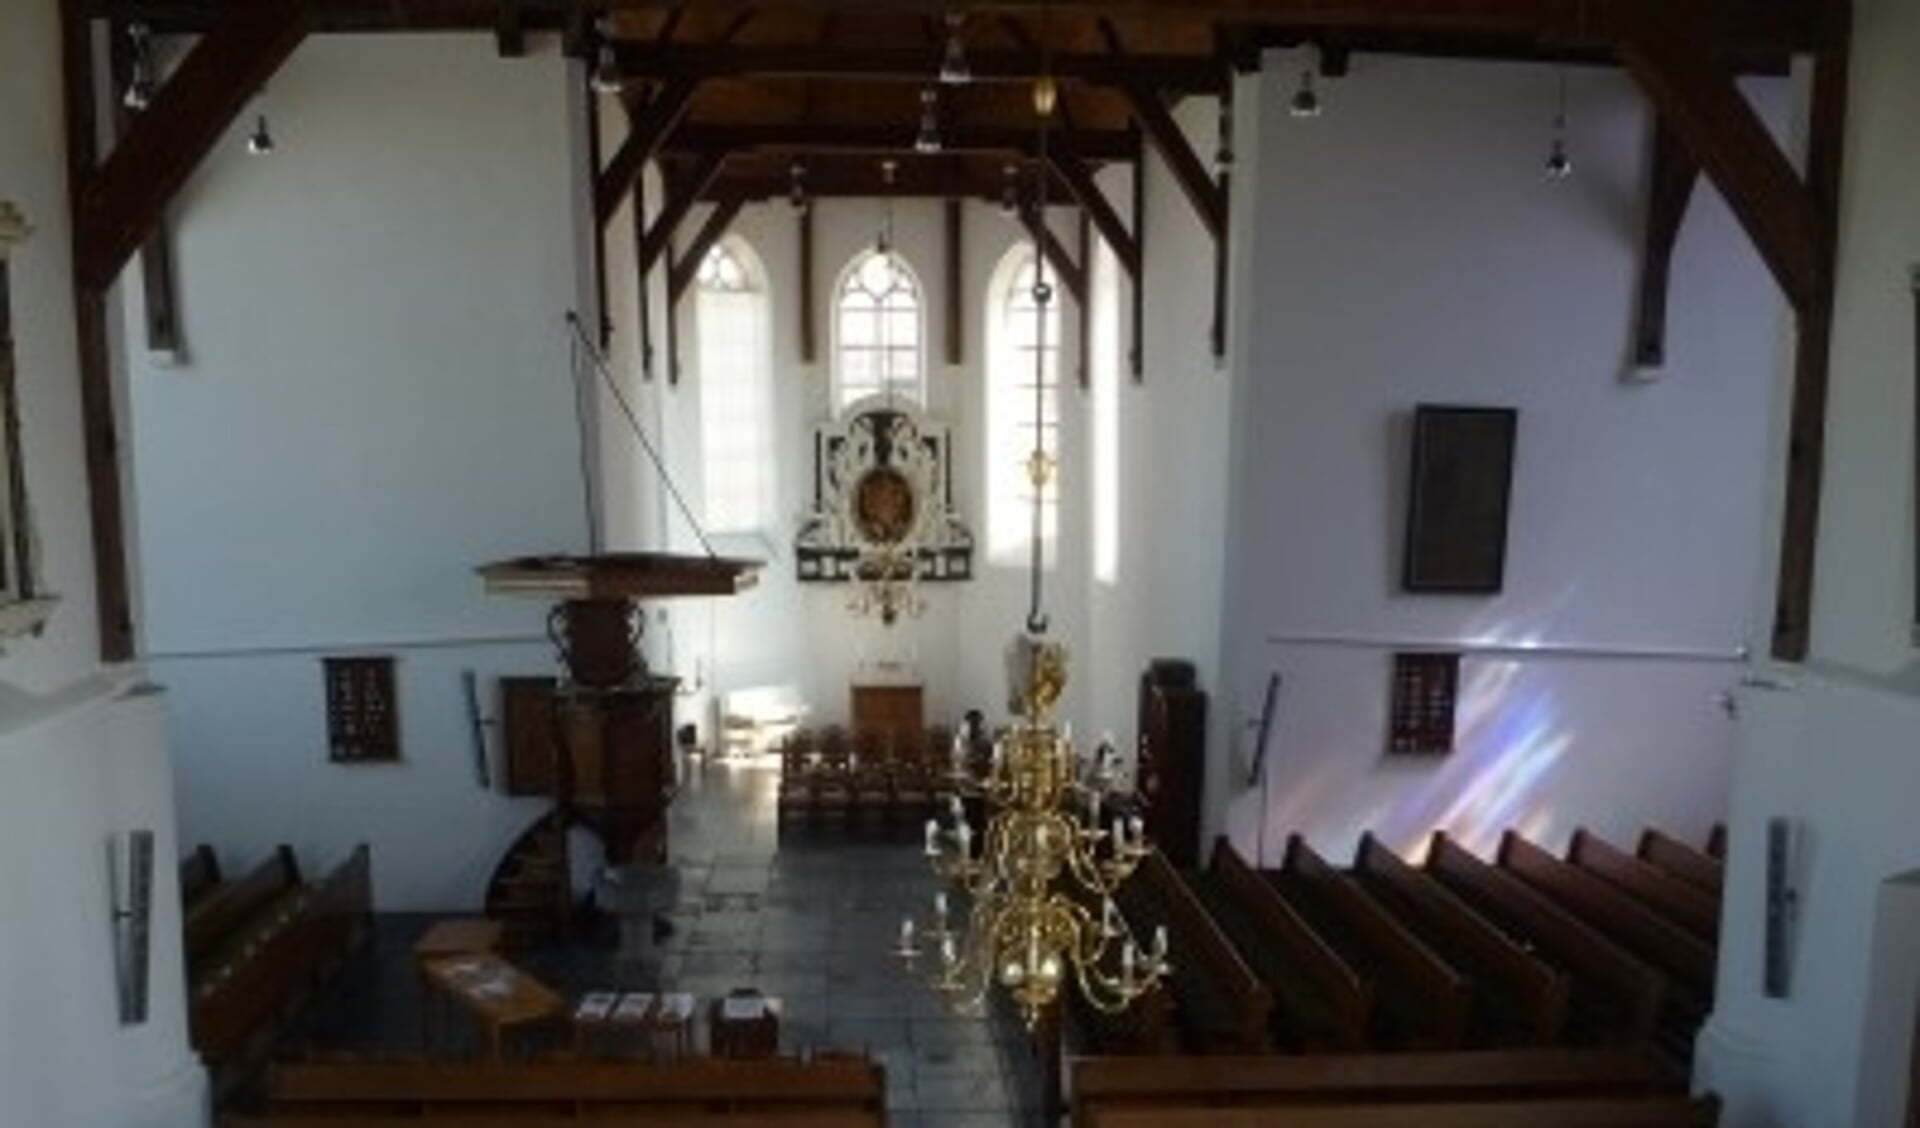 • Interieur van de kerk in Benschop.